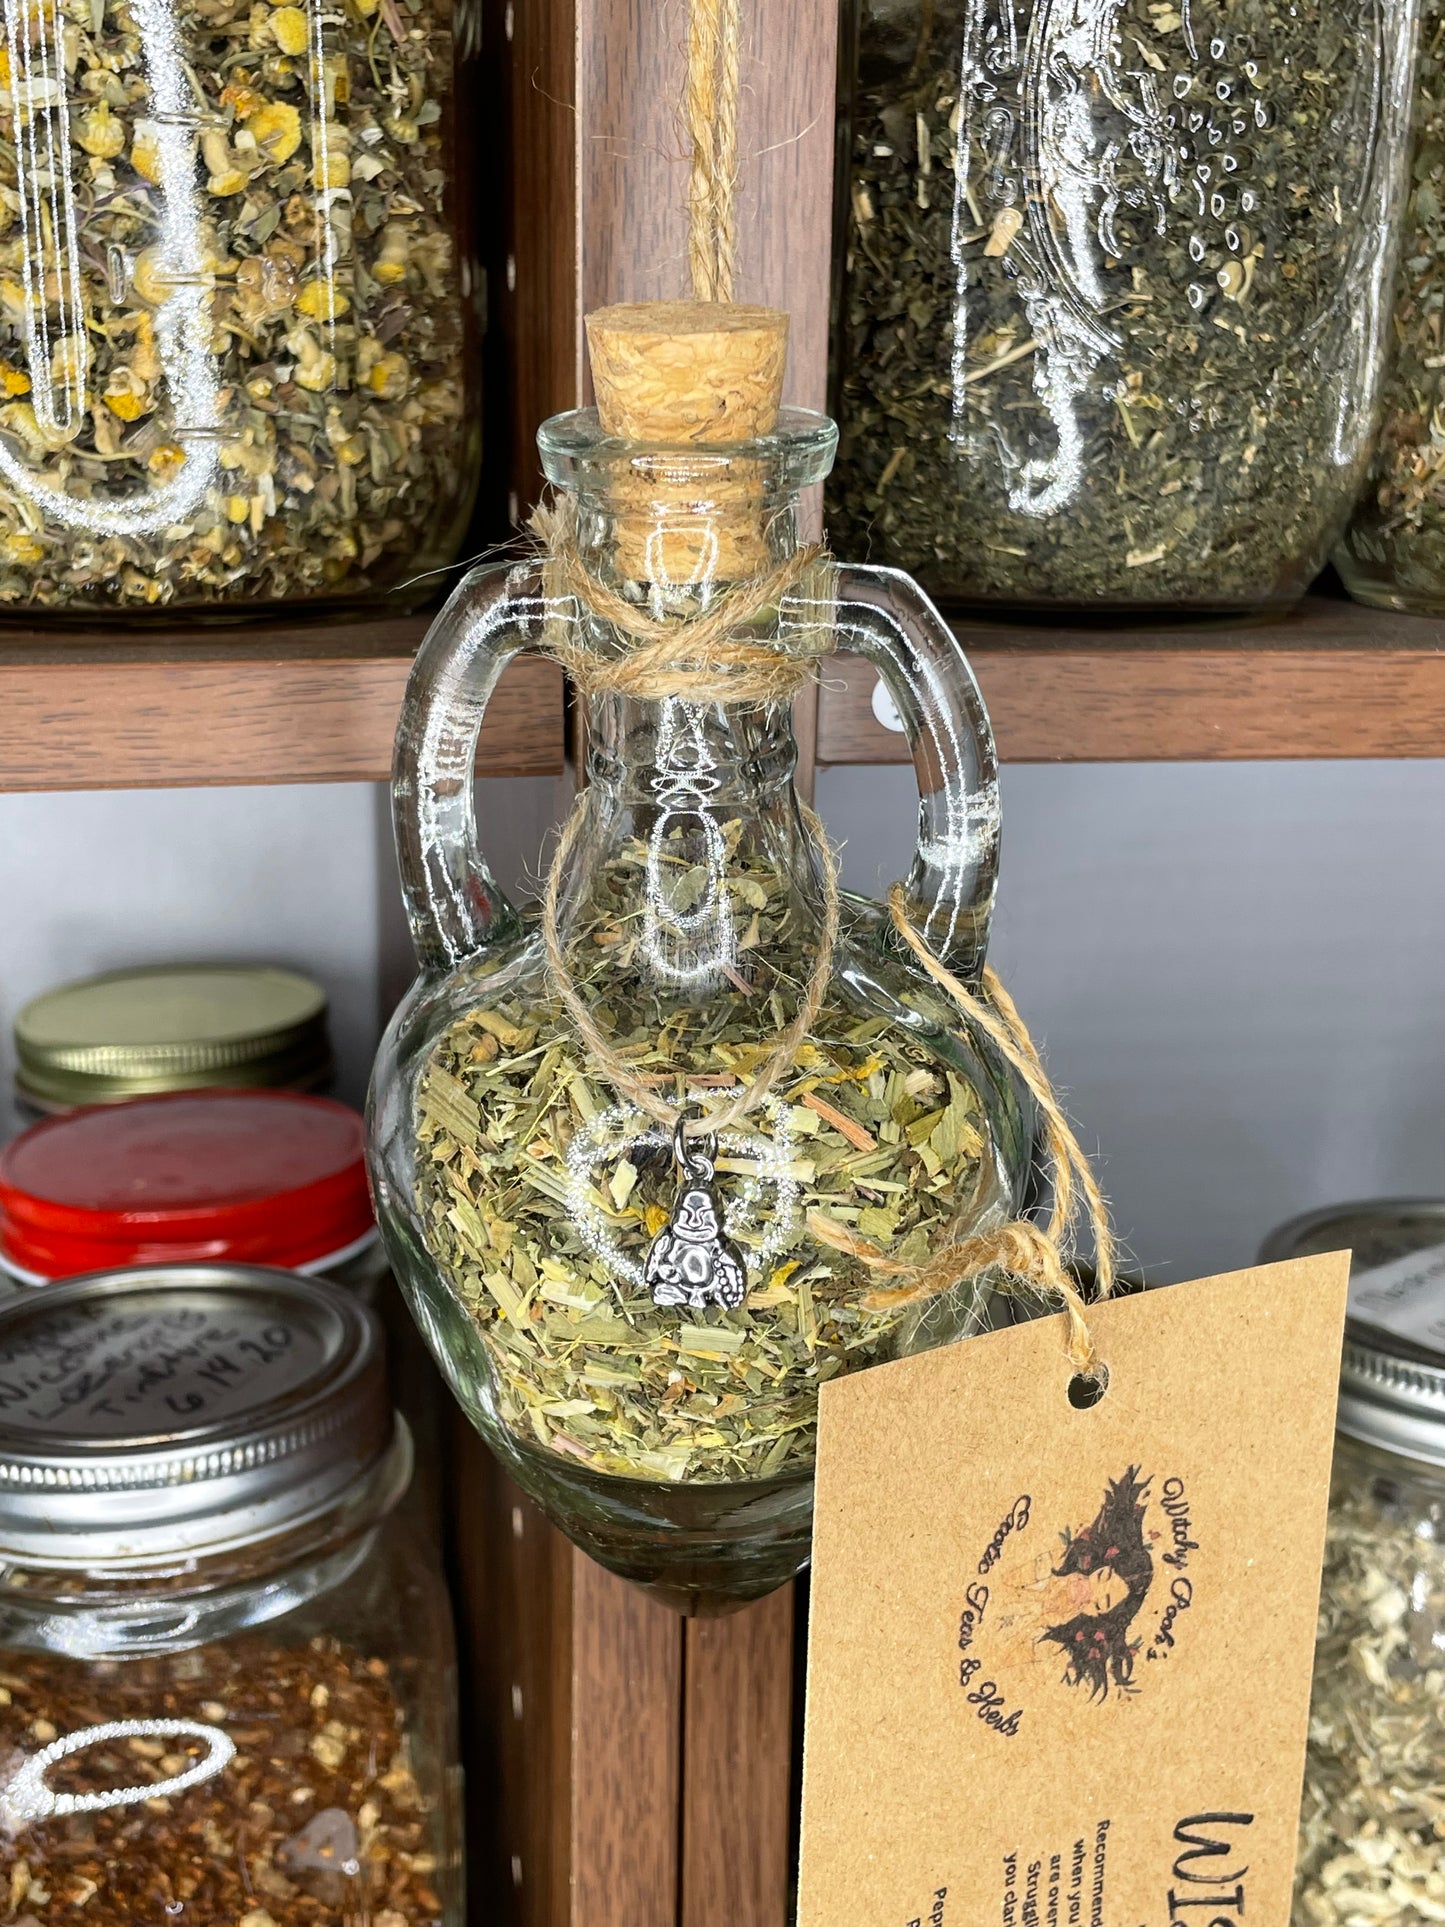 Wisdom Herbal Loose Leaf Tea in Hanging Jars